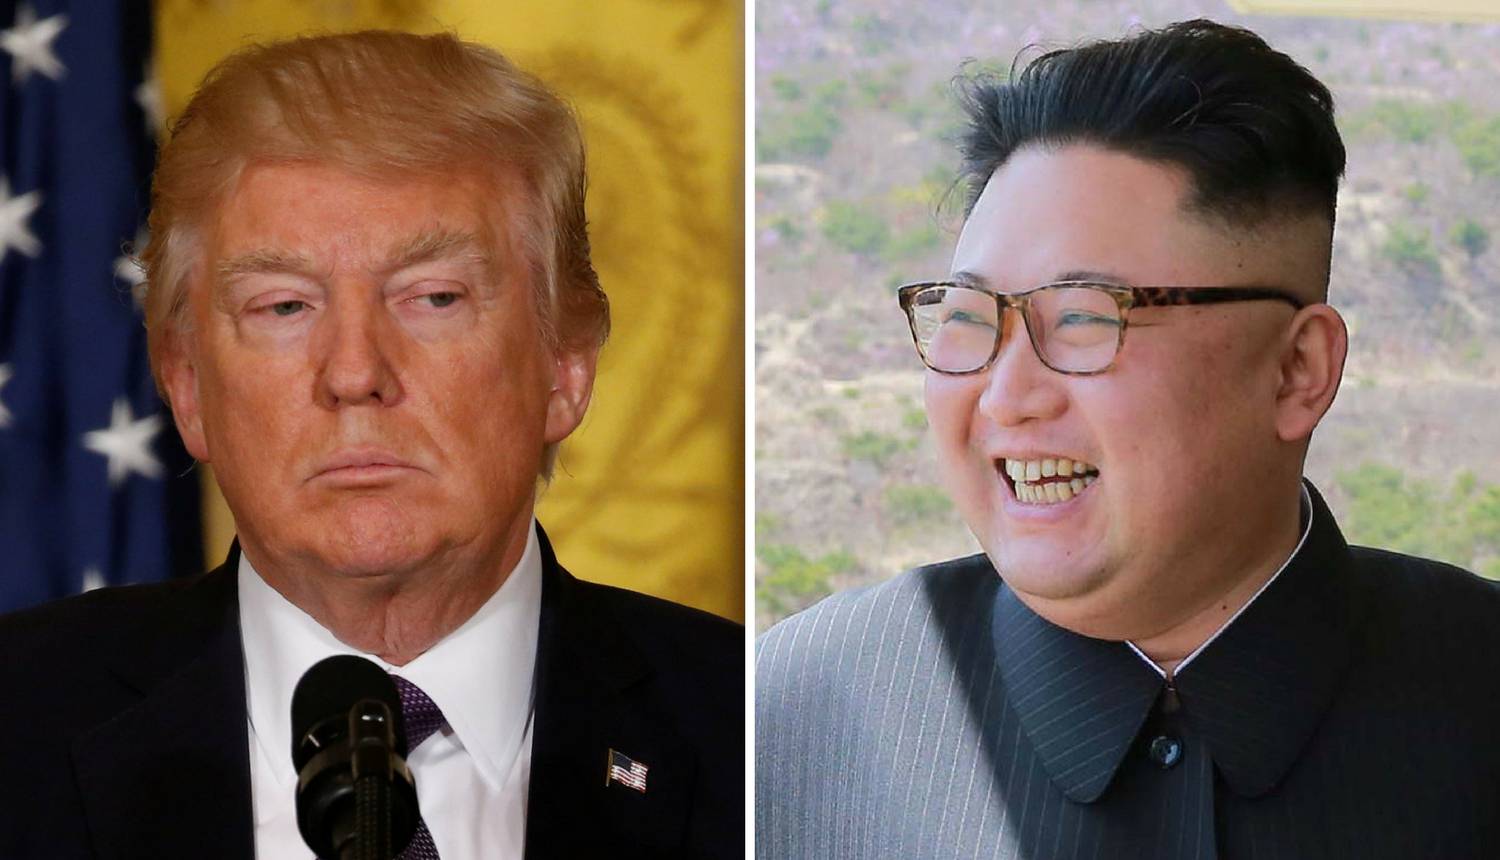 "Kim i Trump se vrijeđaju i prijete poput djece u vrtiću"